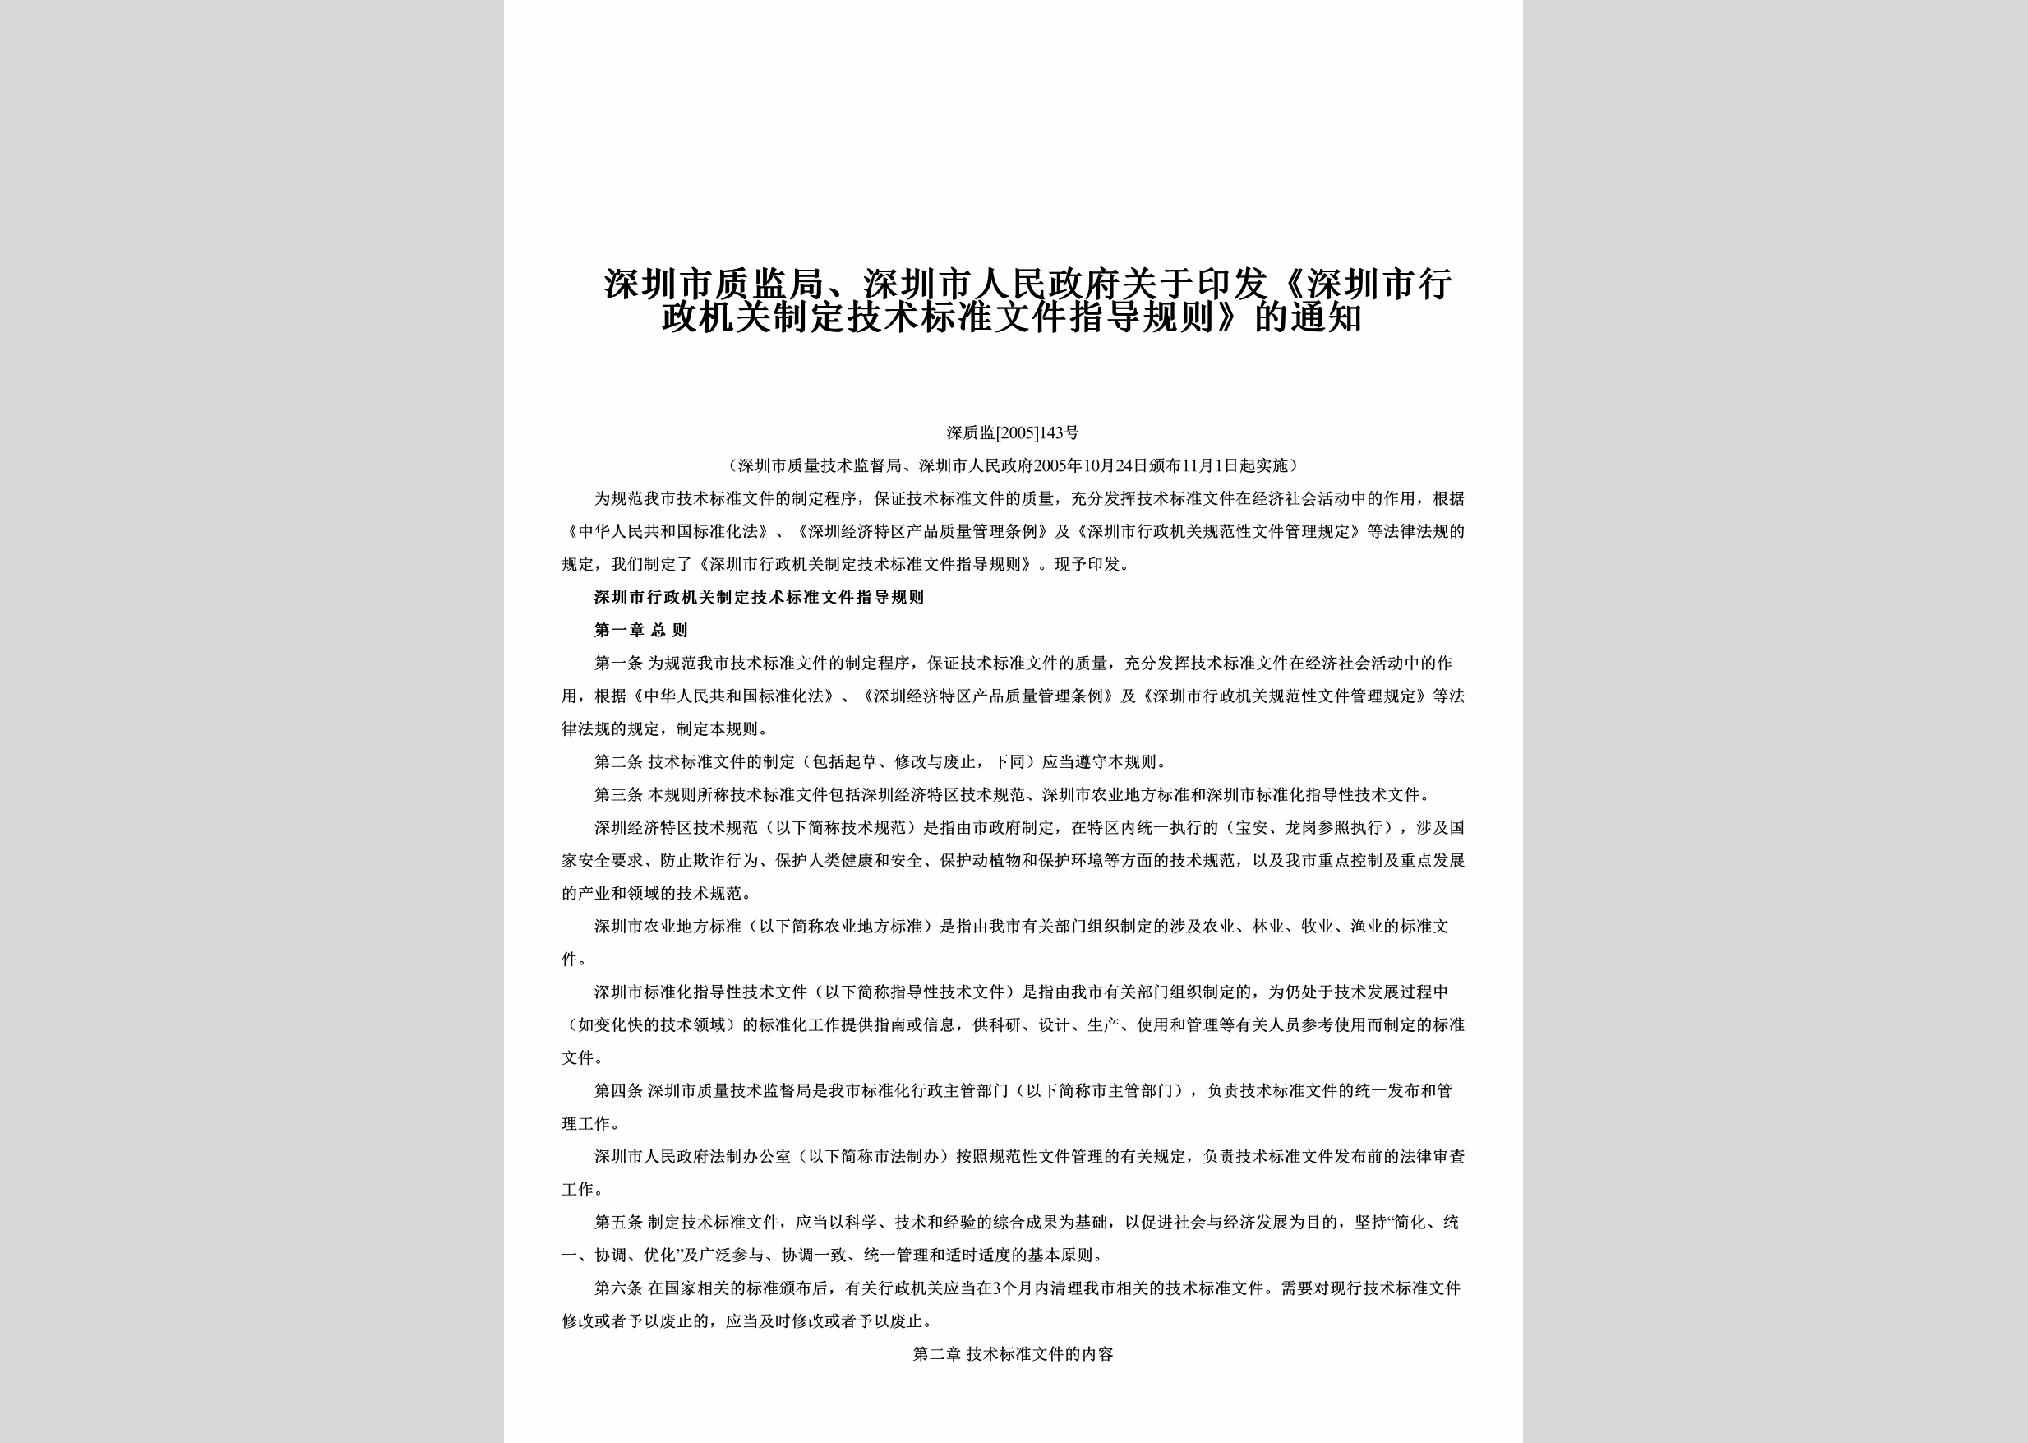 深质监[2005]143号：关于印发《深圳市行政机关制定技术标准文件指导规则》的通知